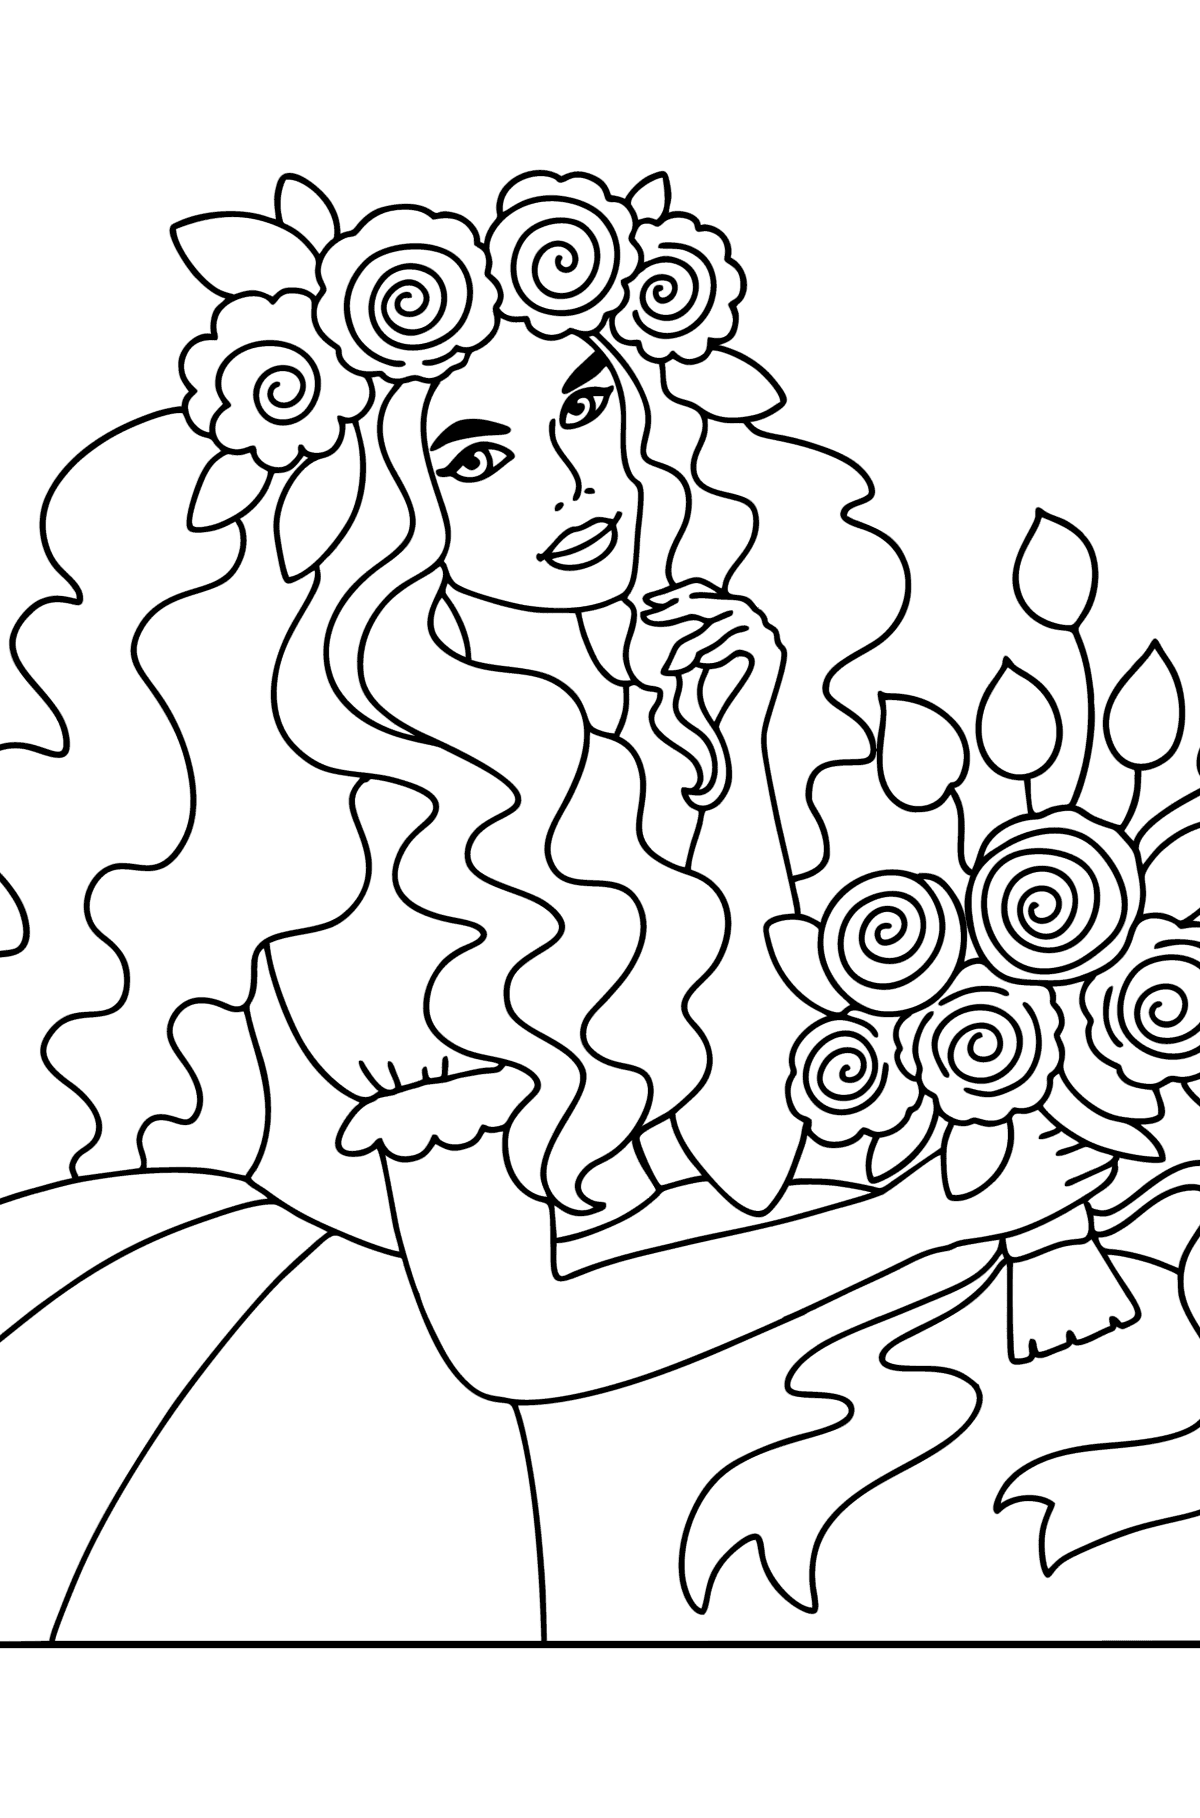 Tegning til fargelegging Blomsterprinsesse - Tegninger til fargelegging for barn